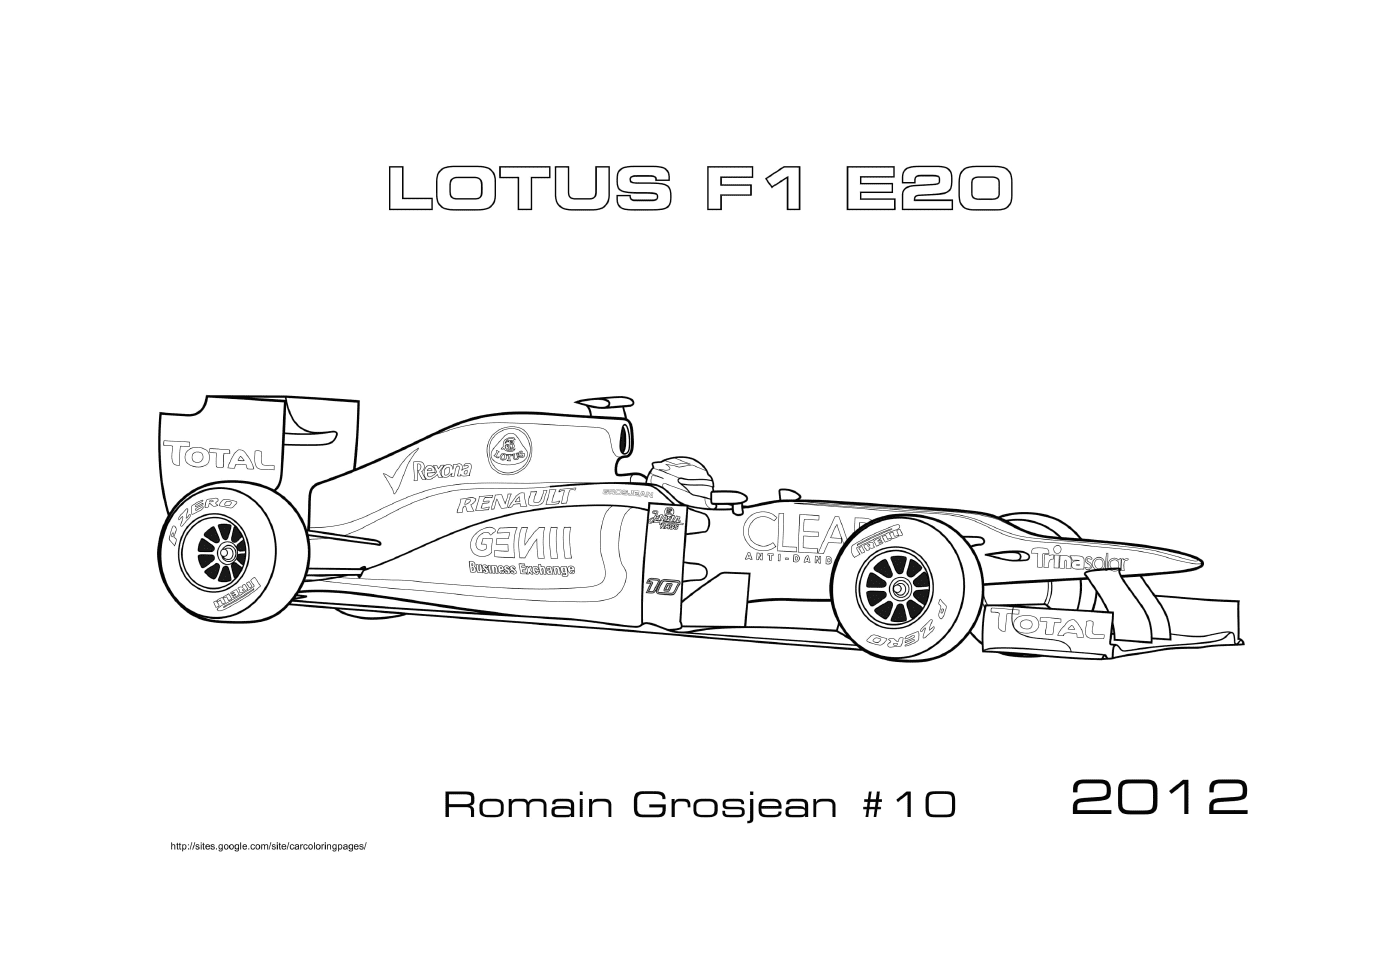  Lotus E20 Romain Grosjean 2012, Formula 1 car 